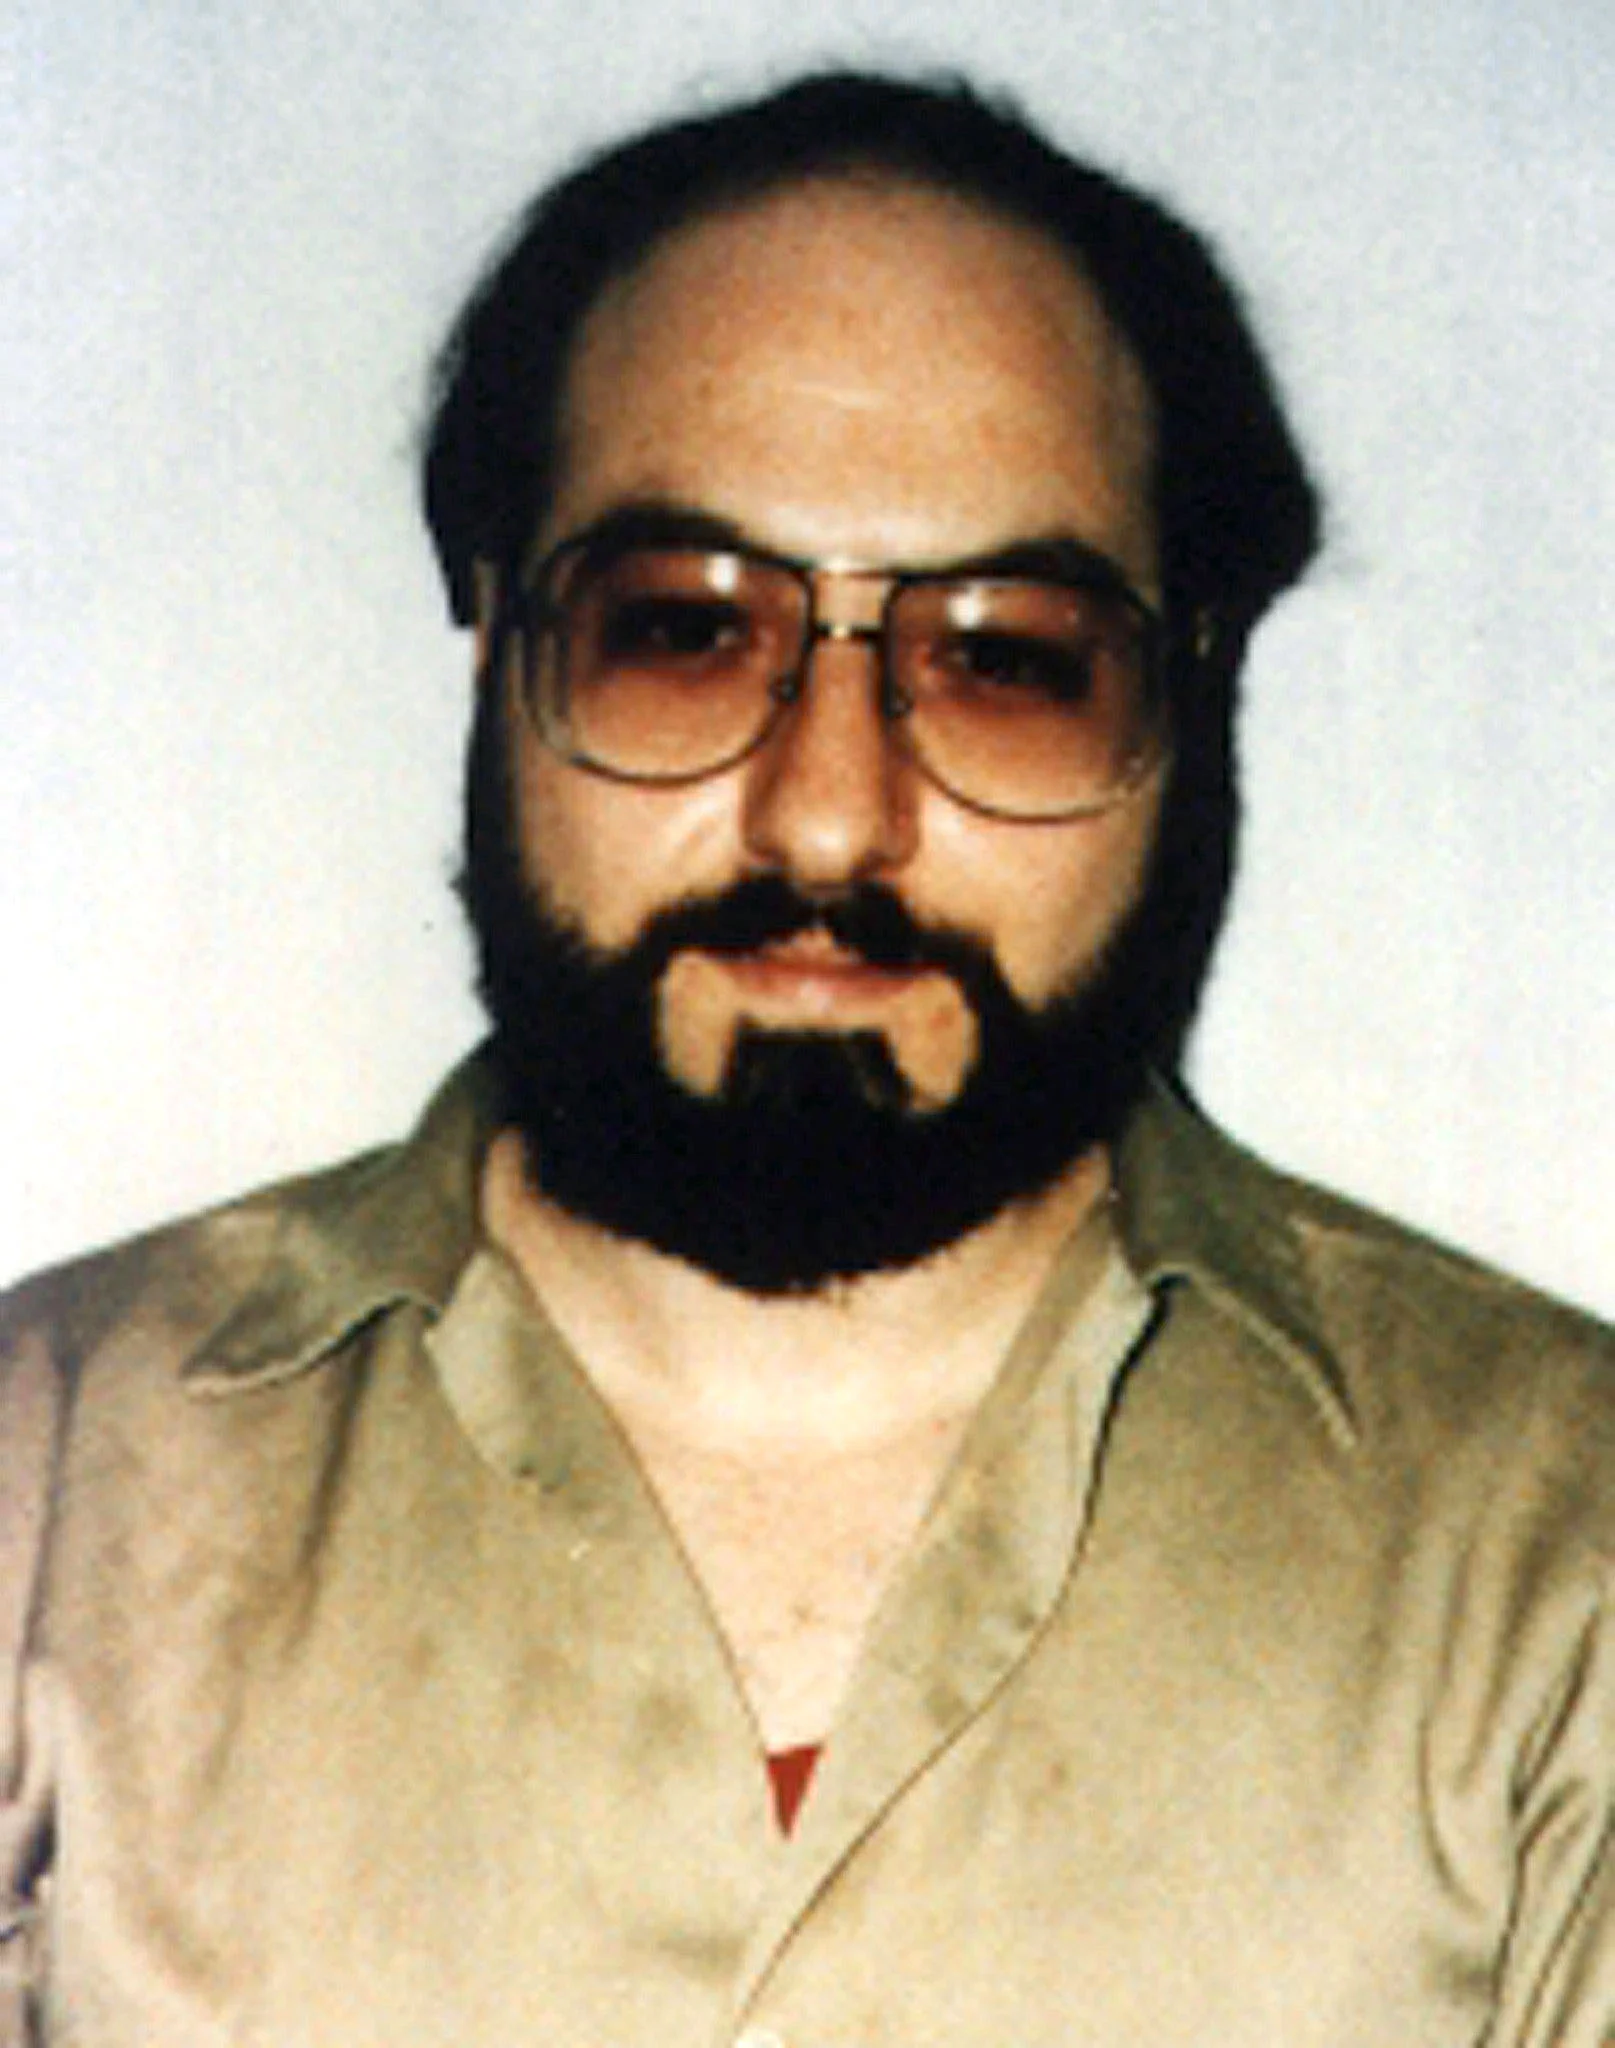 ג'ונתן פולארד, במדי אסיר, בשנת 1991 - שש שנים לאחר שנתפס